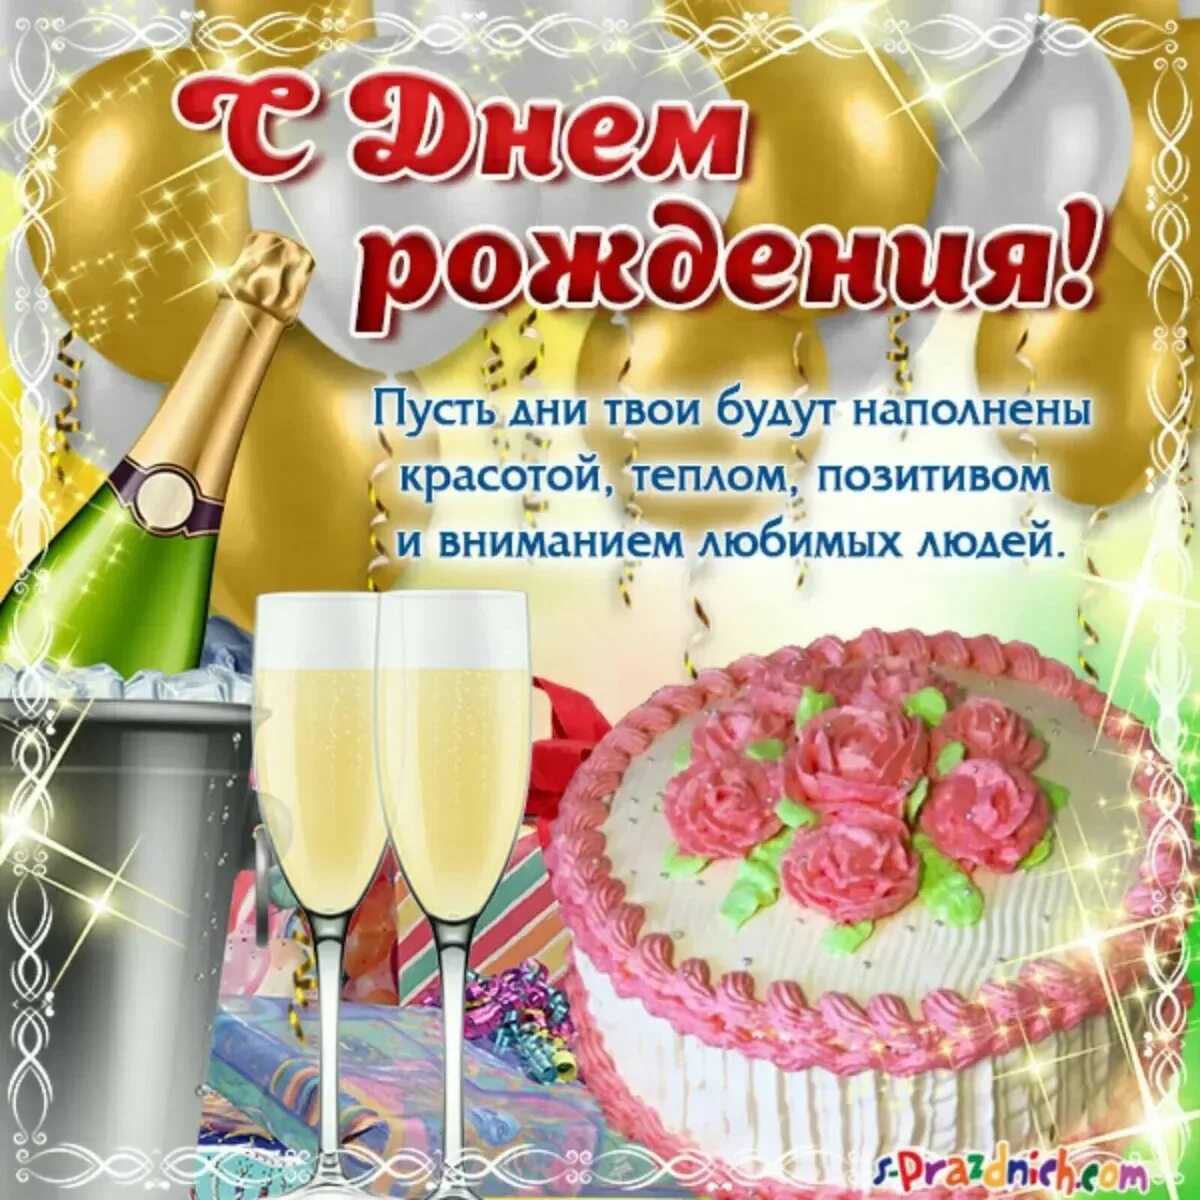 С днем рождения. Поздравления с днём рождения. Света с днём рождения поздравления. Поздравления с днём рождения с тортом и шампанским. Поздравление с днем рождения женщине света красивые